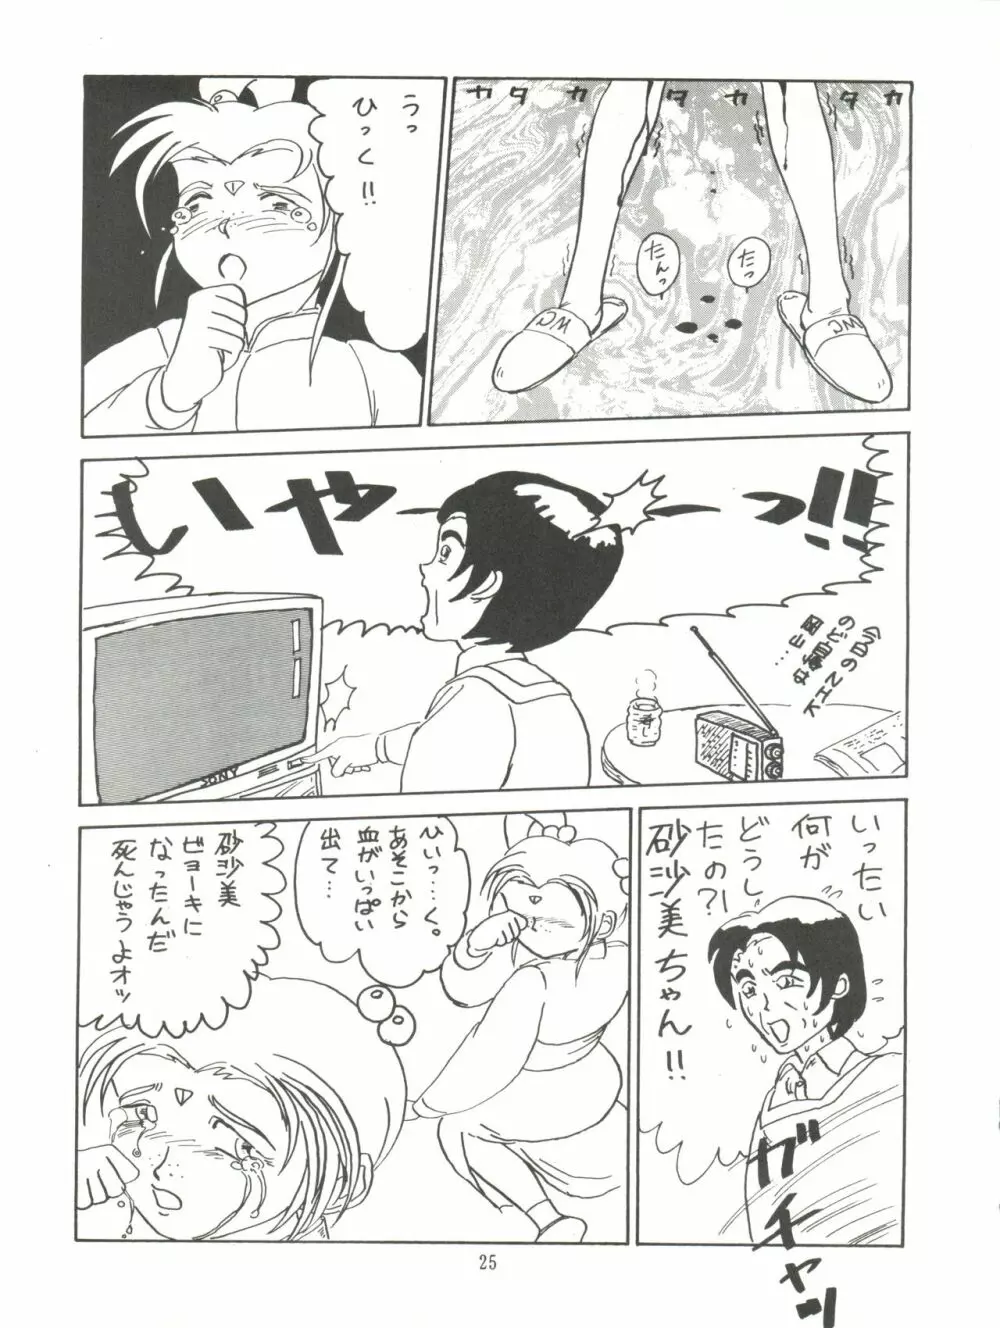 天地無用! みゃーん 3 Final Page.25